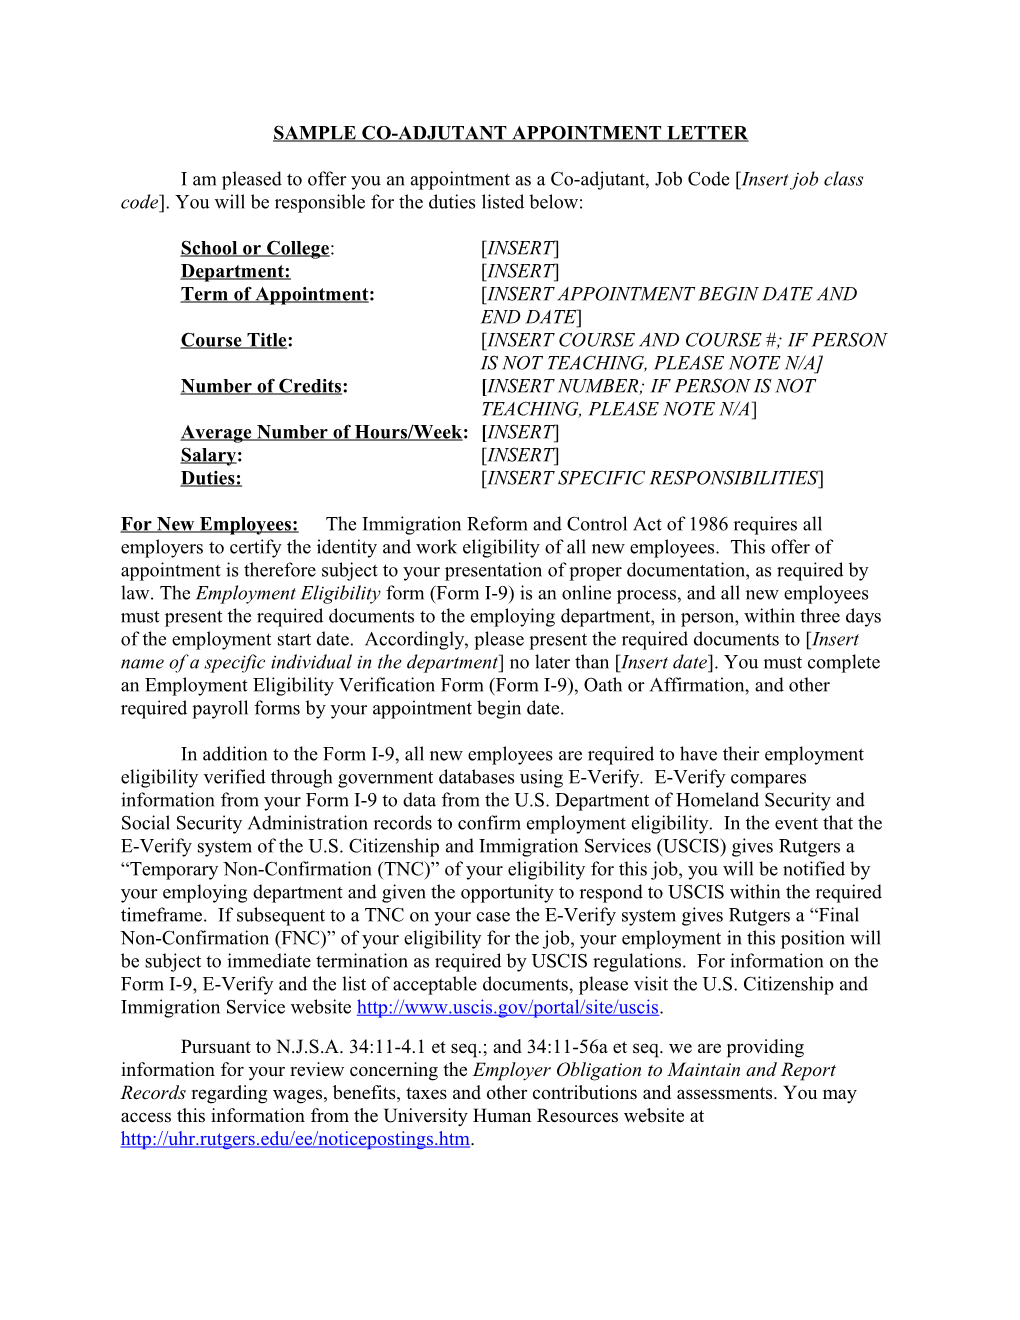 Sample Co-Adjutant Appointment Letter